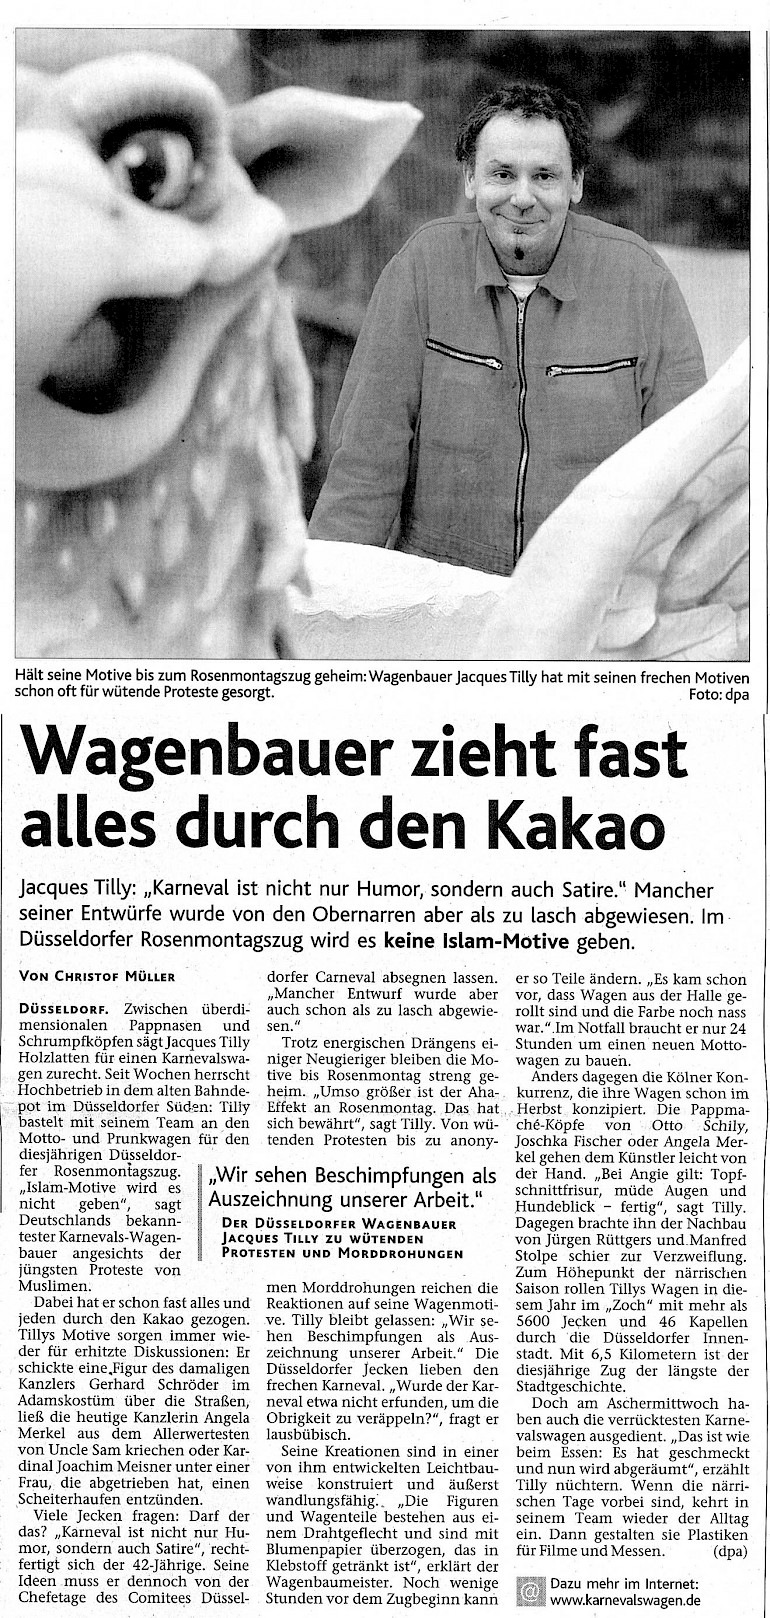 Aachener Nachrichten, 21.2.2006 Artikel im Wortlaut [/pressespiegel/2006/p-2006-02-21-aachener-nachrichten/p-2006-02-21-aachener-nachrichten-txt/]